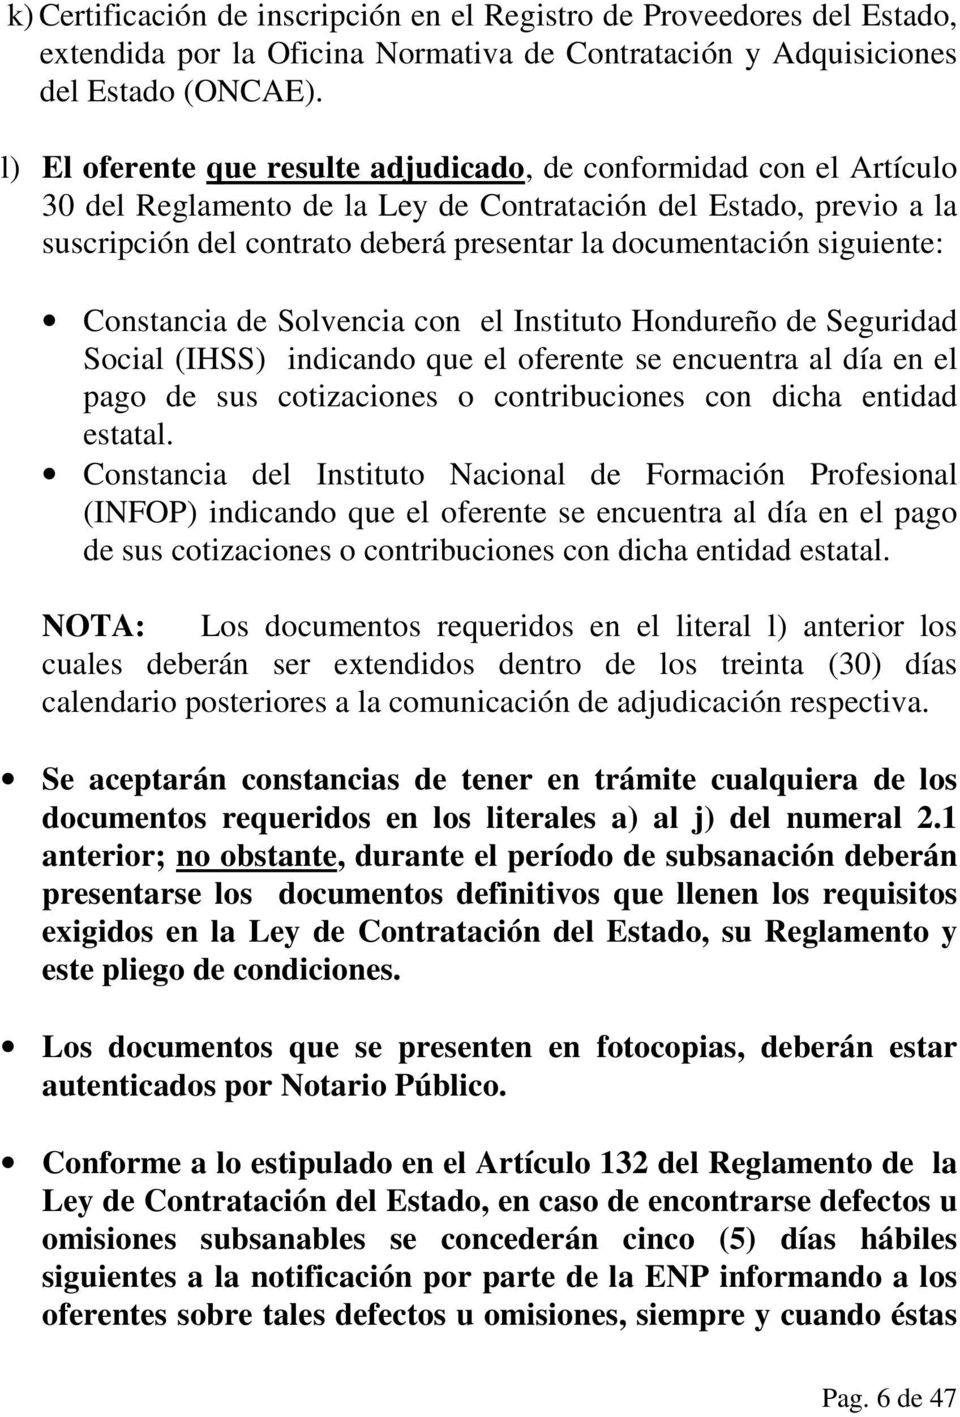 siguiente: Constancia de Solvencia con el Instituto Hondureño de Seguridad Social (IHSS) indicando que el oferente se encuentra al día en el pago de sus cotizaciones o contribuciones con dicha